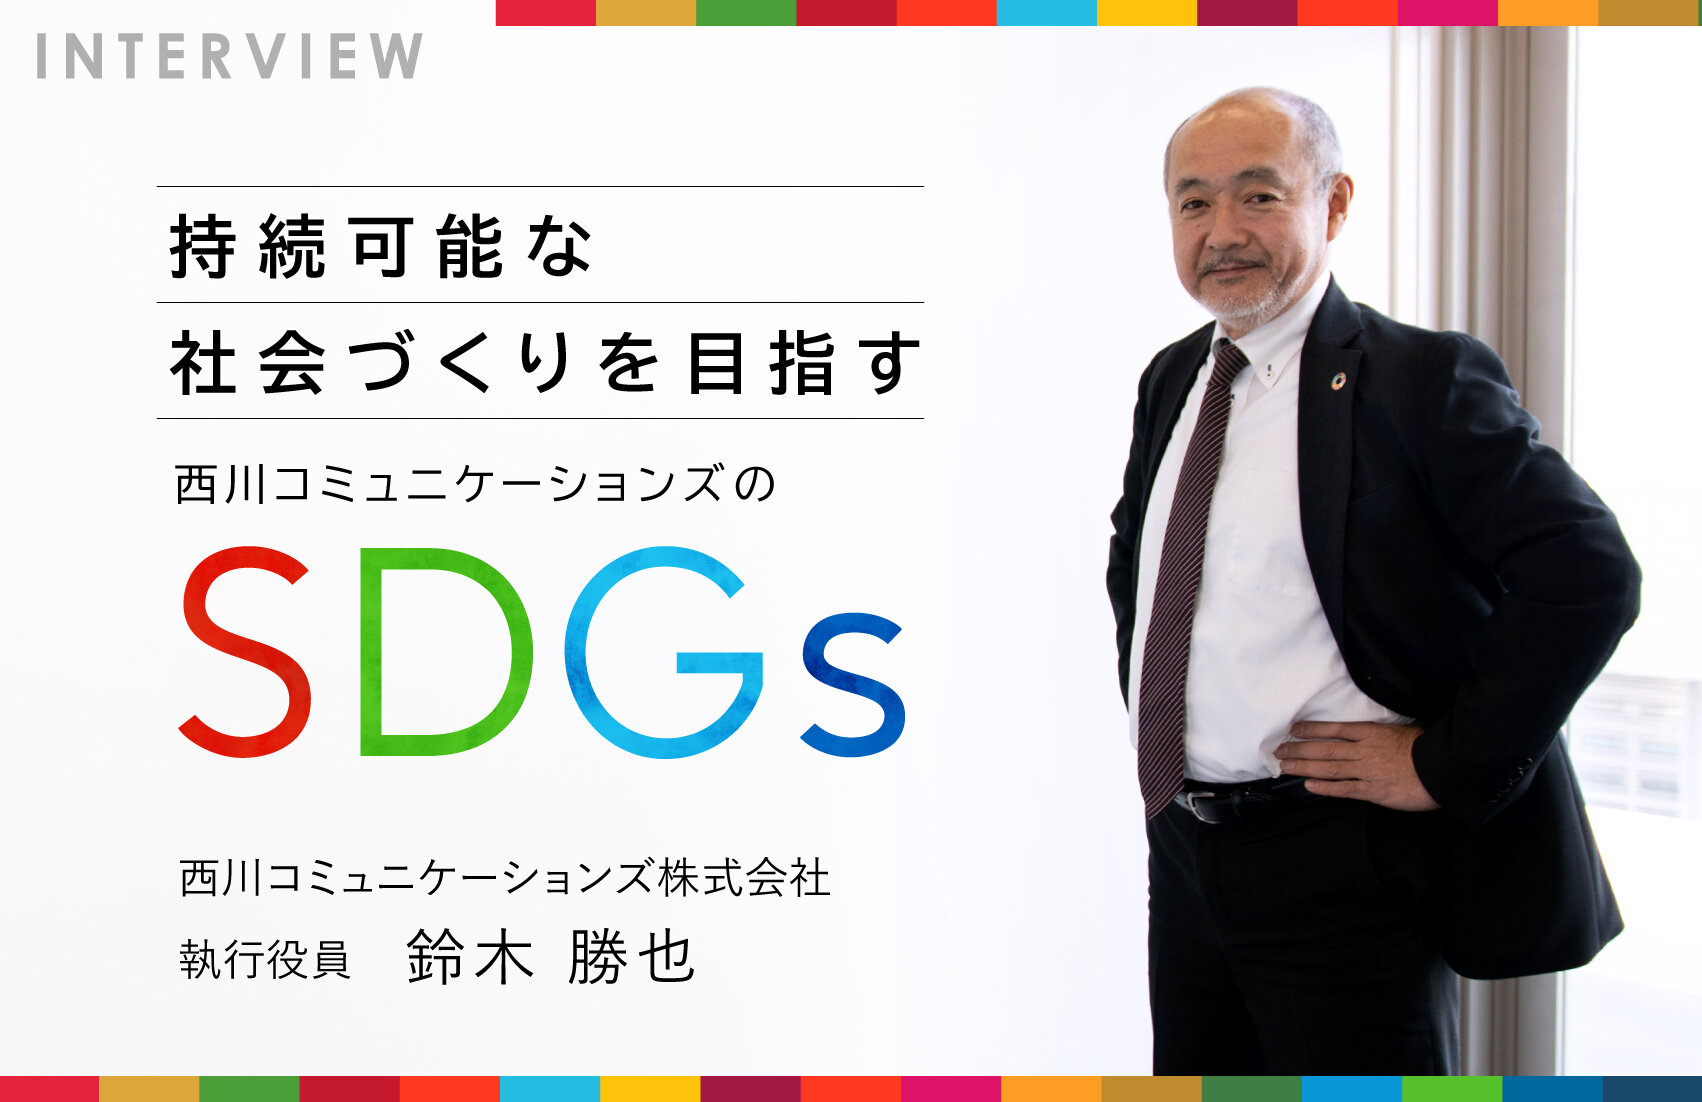 持続可能な社会づくりを目指す、西川コミュニケーションズのSDGs